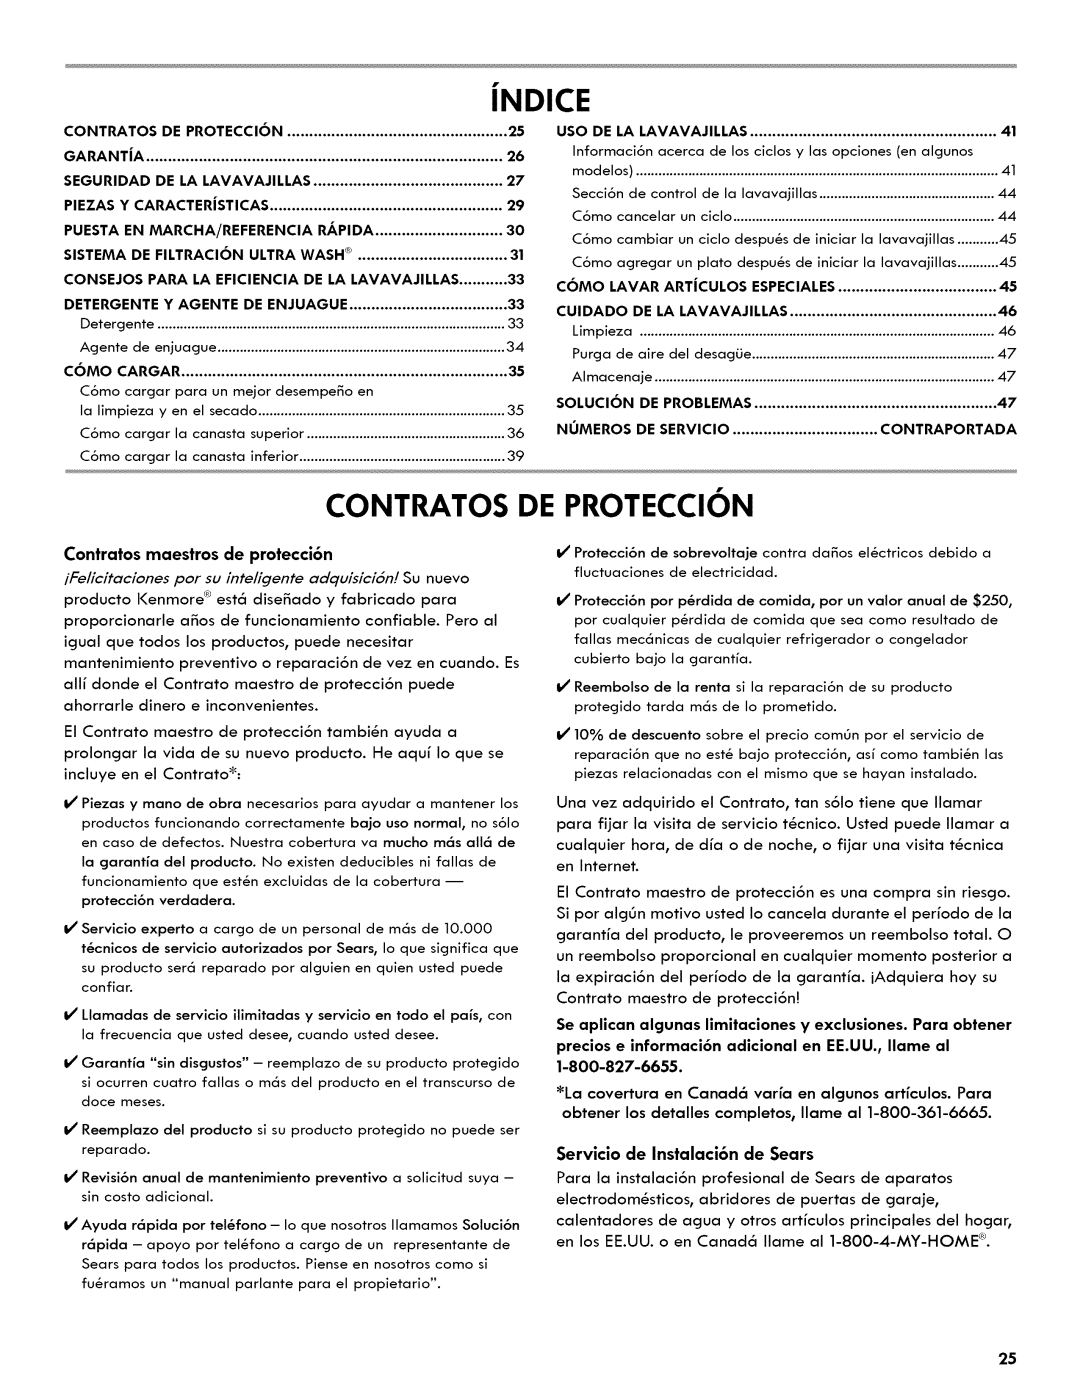 Kenmore 665.1404 manual Jndice, Contratos De Proteccion, Contratos maestros de protecci6n 